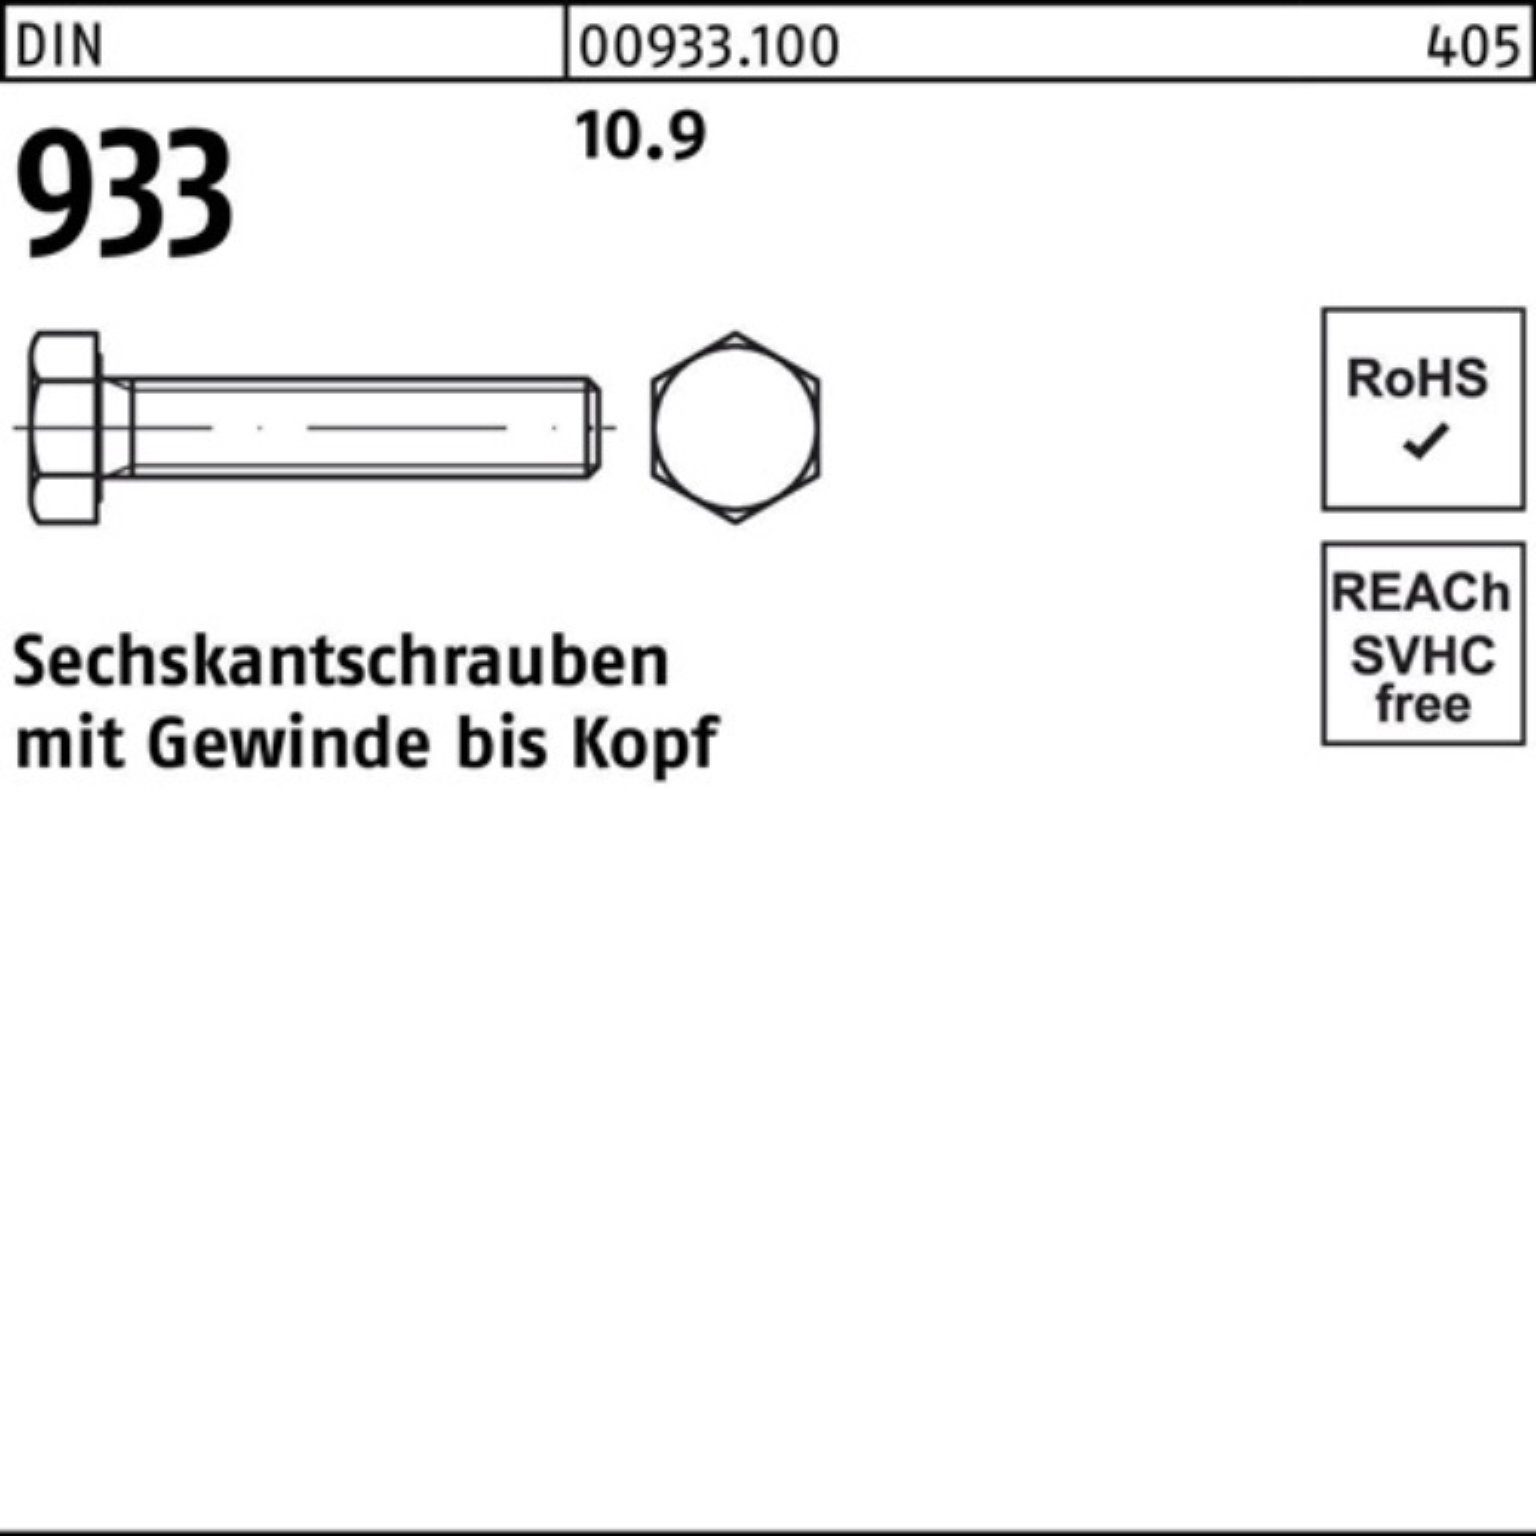 90 M27x Reyher Sechskantschraube 933 933 DIN 100er Sechskantschraube VG 10 Pack Stück DIN 10.9